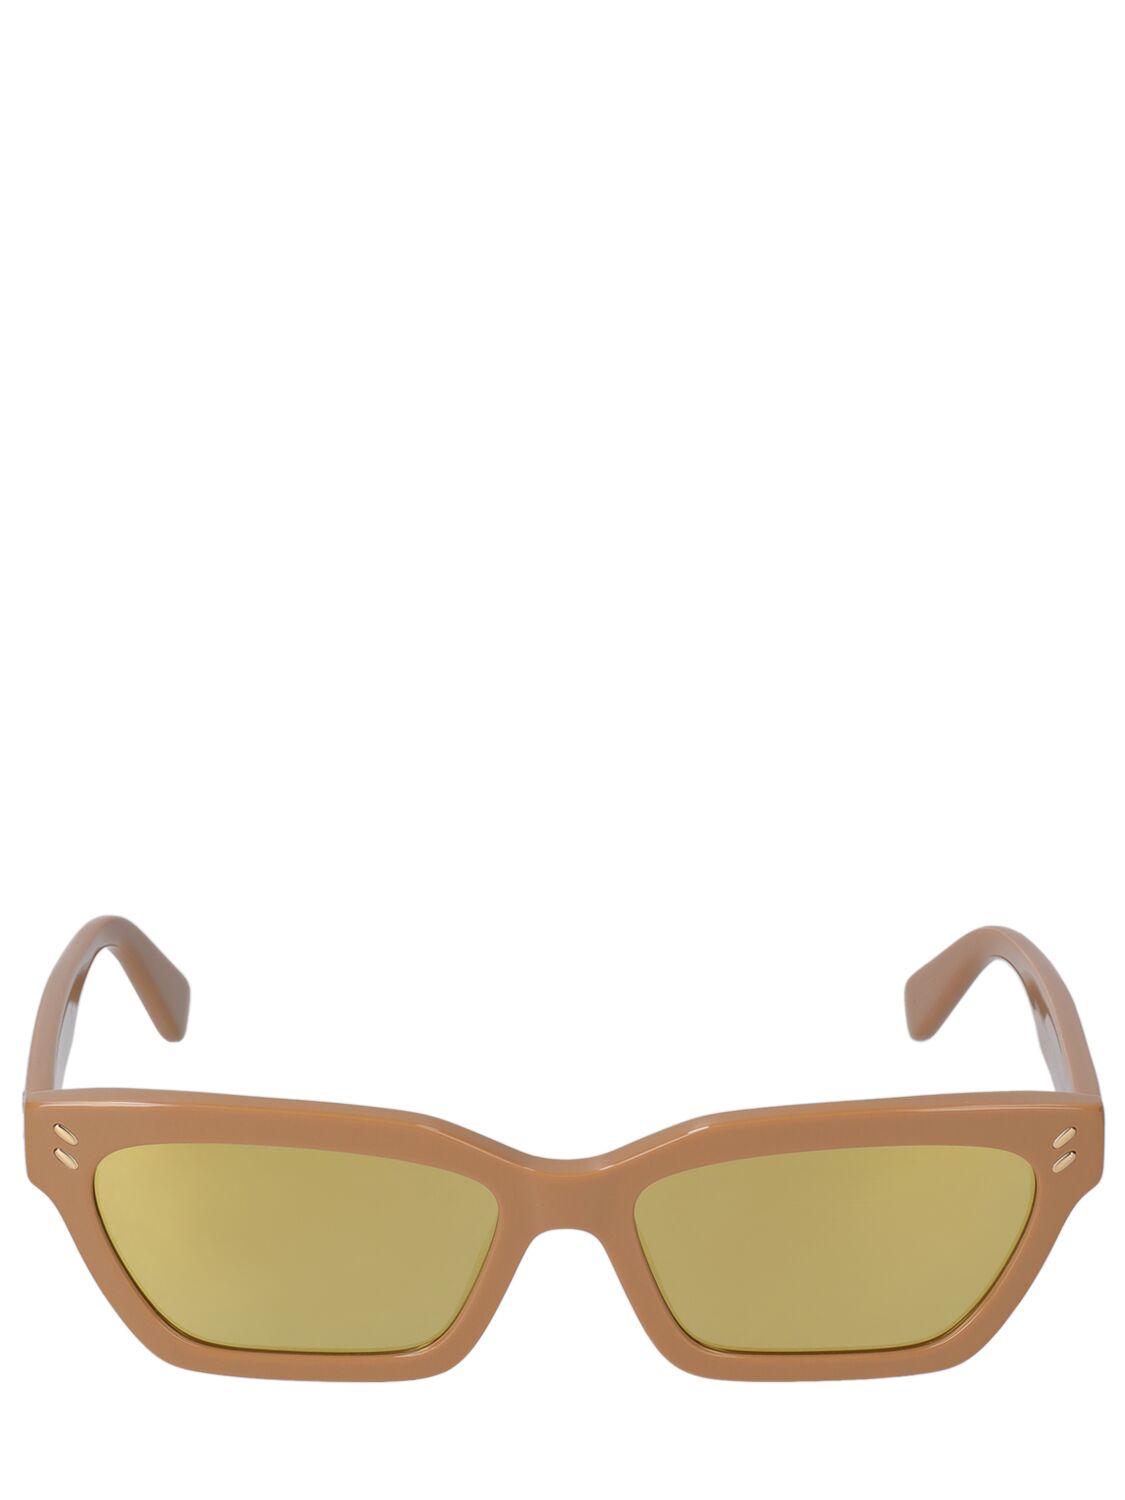 Stella Mccartney Squared Acetate Sunglasses In Beige,brown